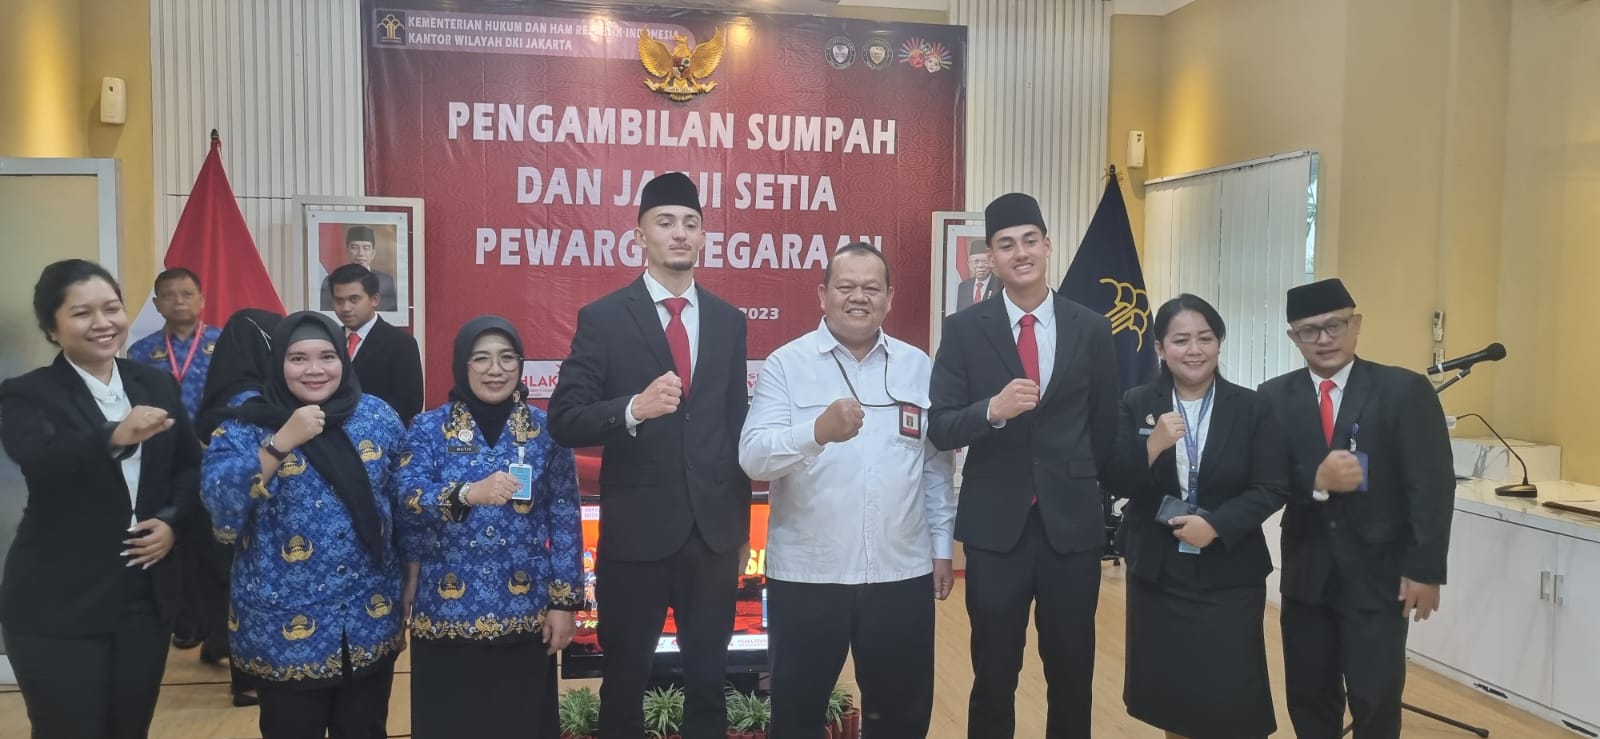 Ivar Jenner dan Rafael William Struick resmi menjadi Warga Negara Indonesia (WNI)